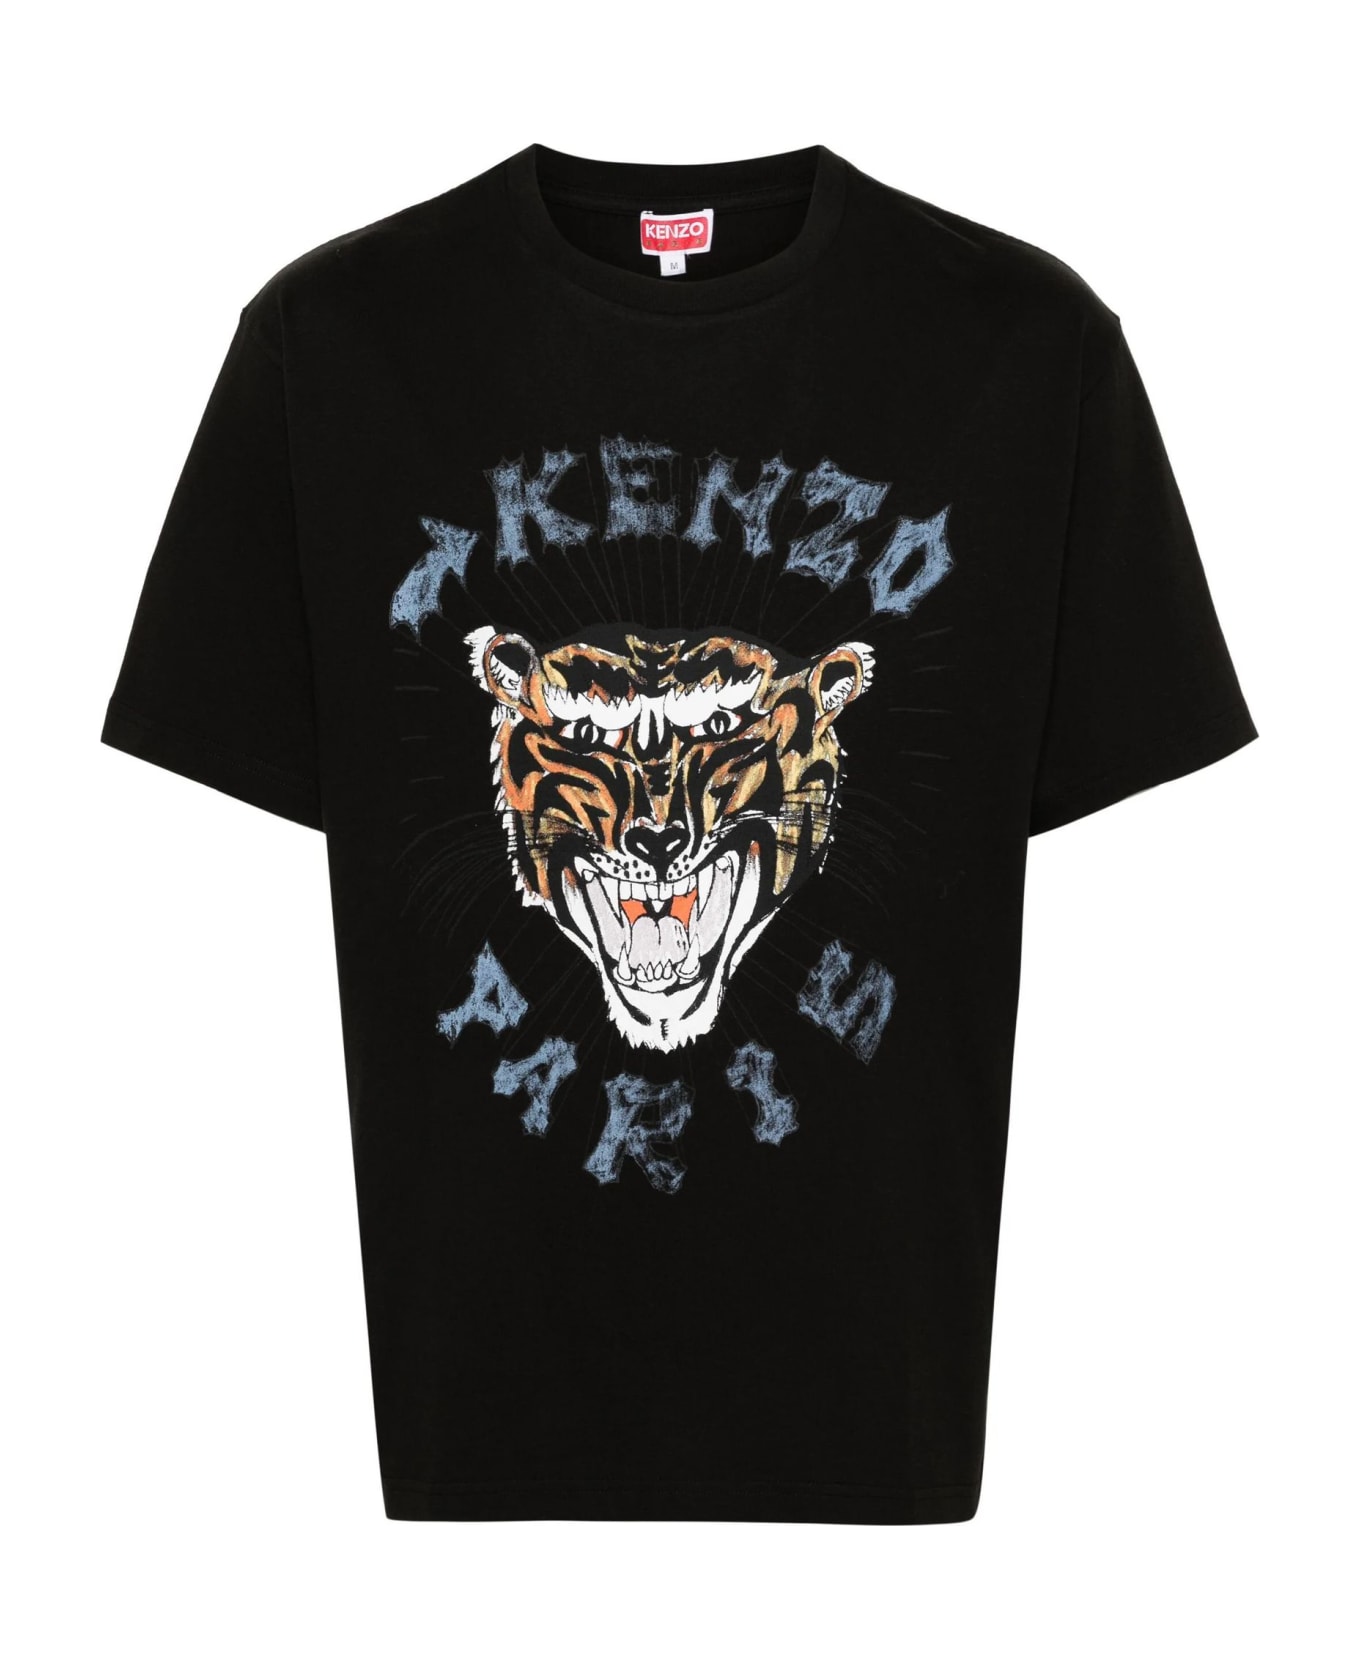 Kenzo T-shirts And Polos Black - Black シャツ